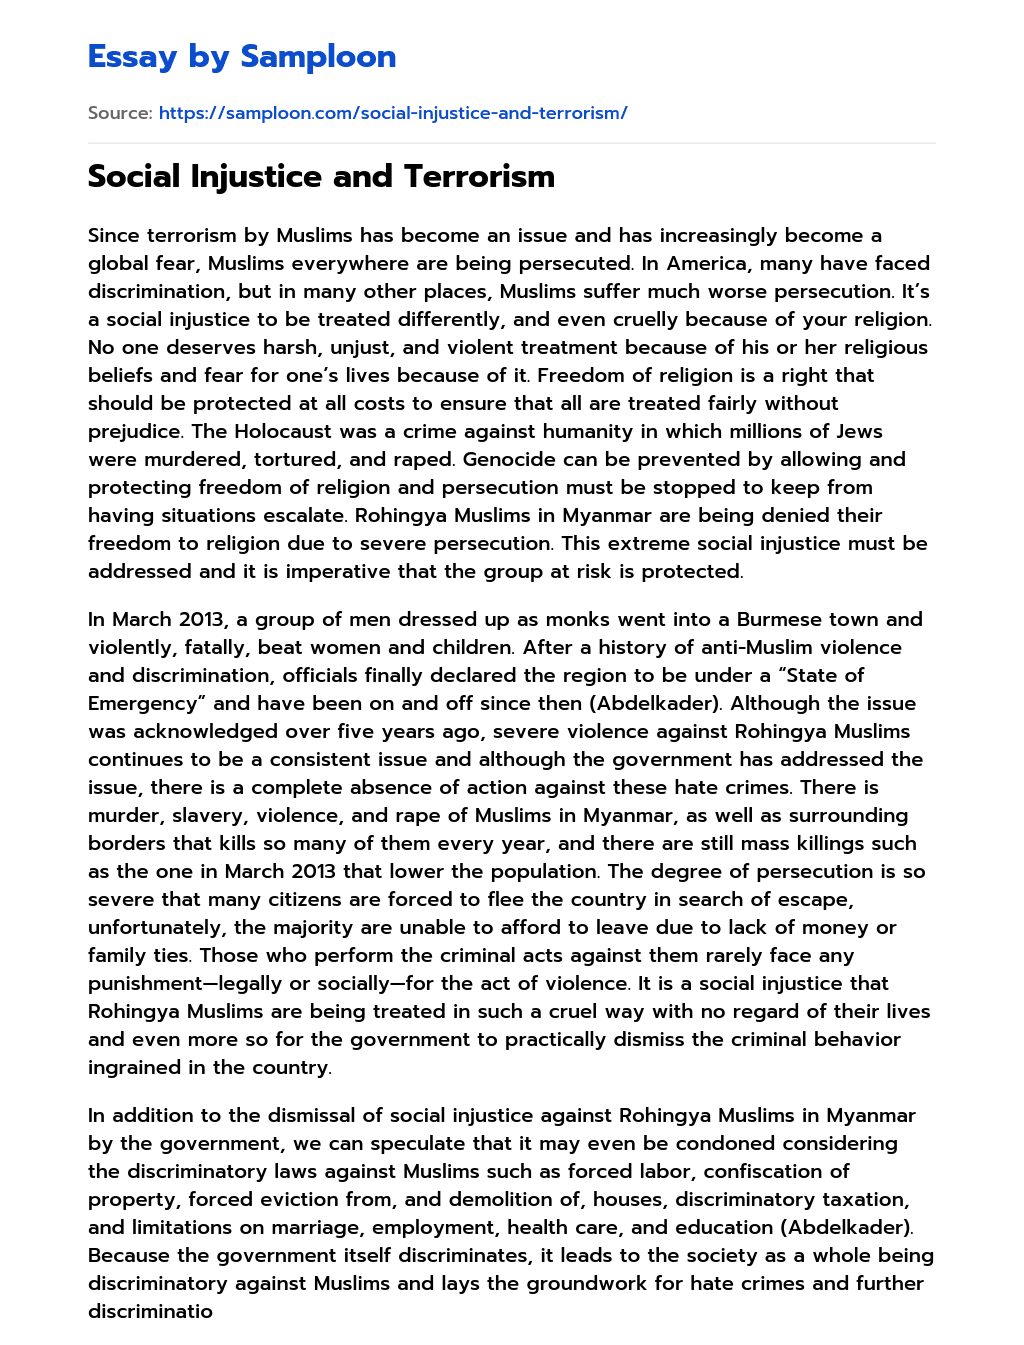 Social Injustice and Terrorism essay